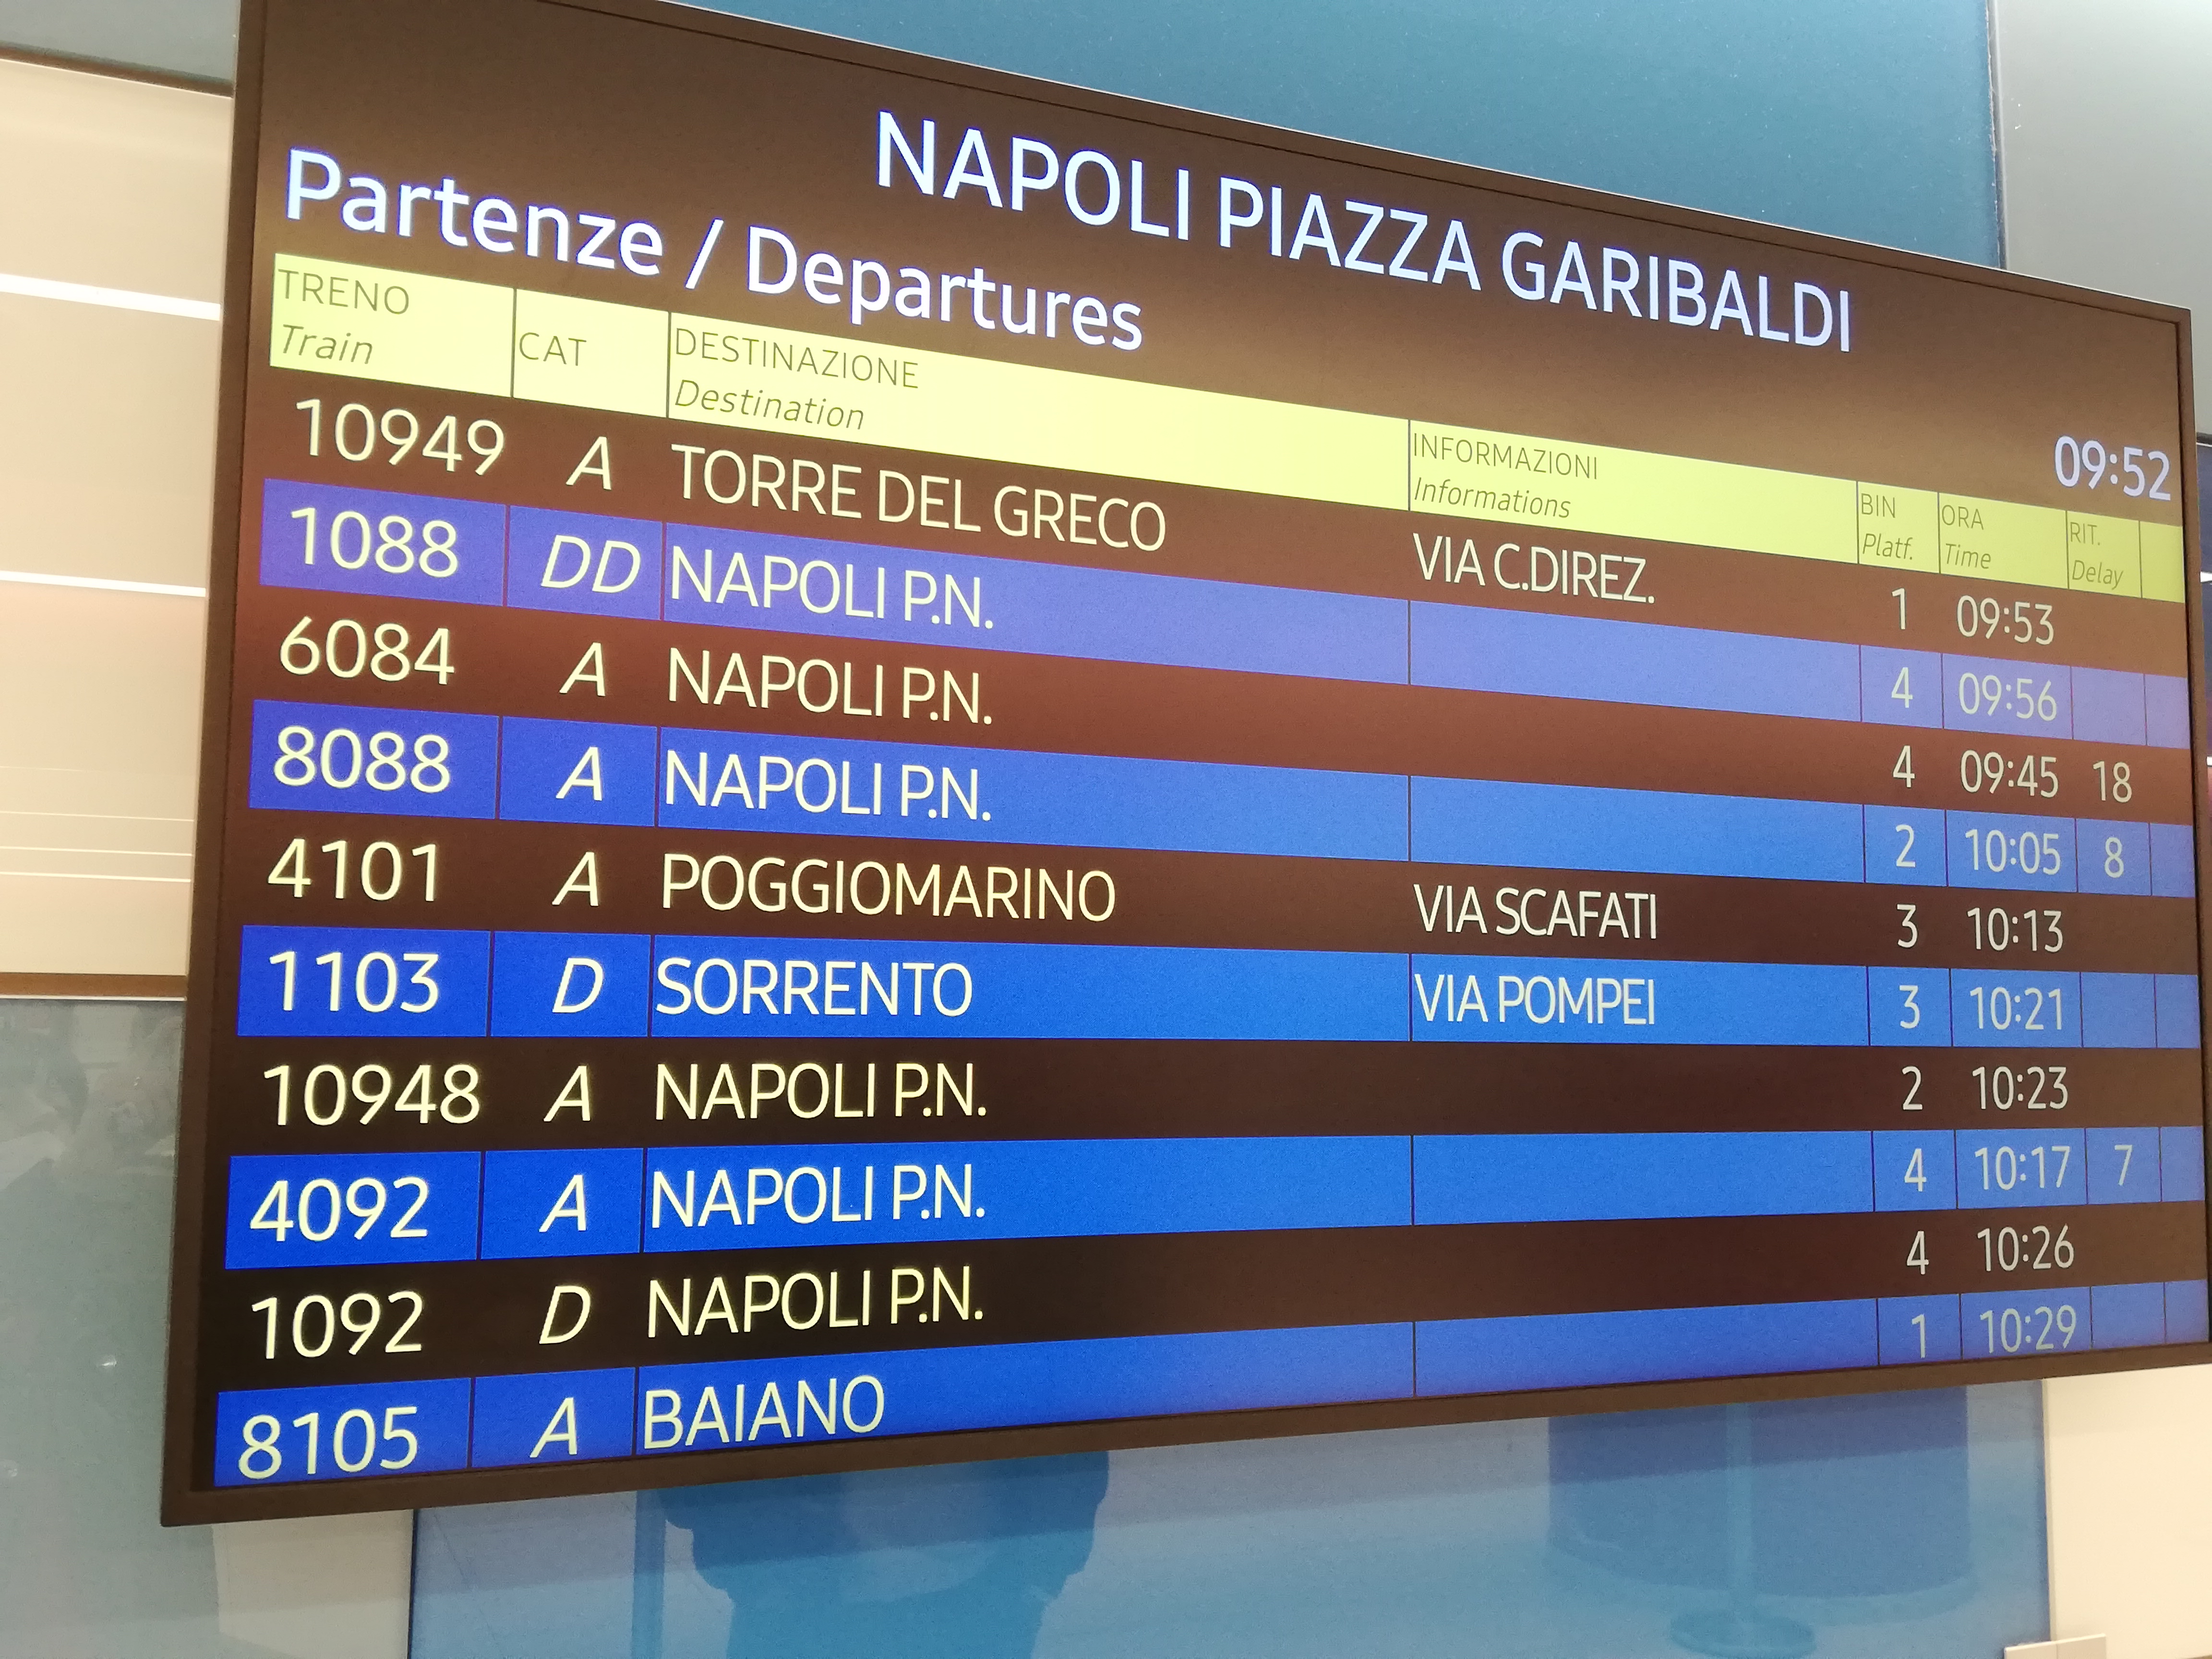 Napoli Itali Piazza garibaldi train station display